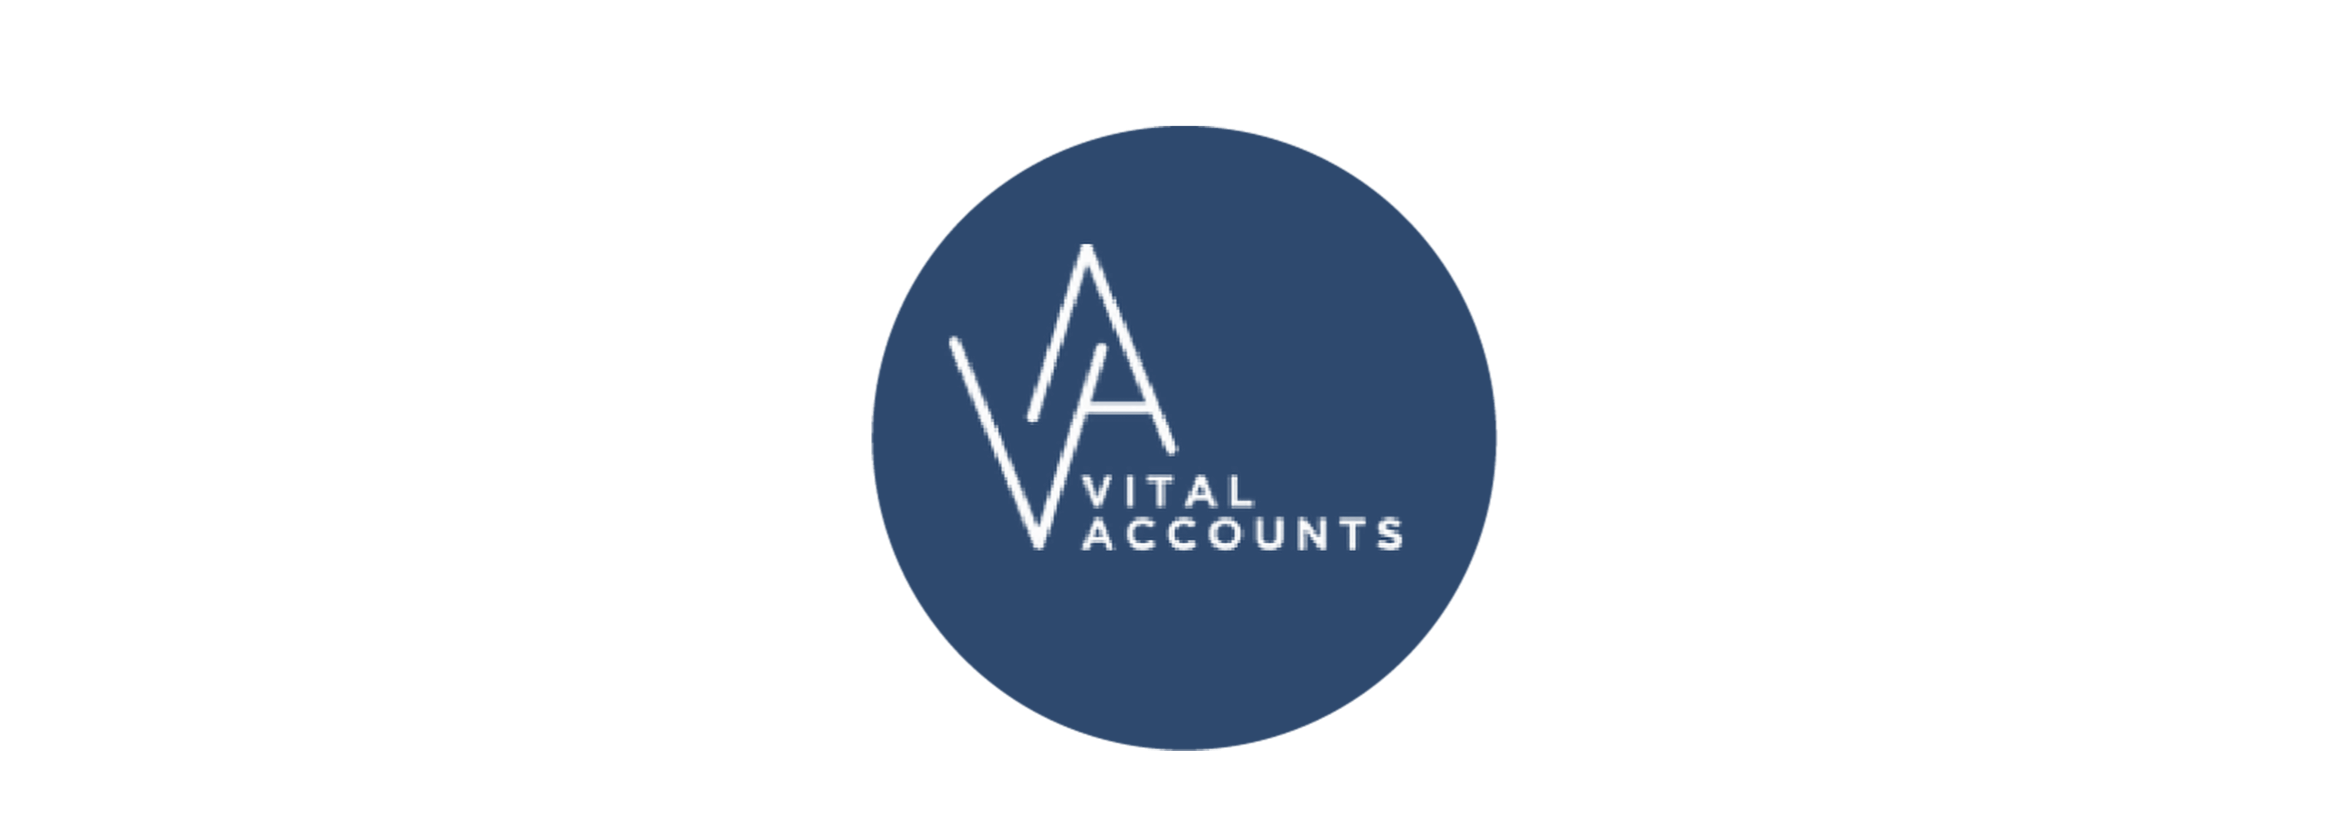 The VitalAccounts logo